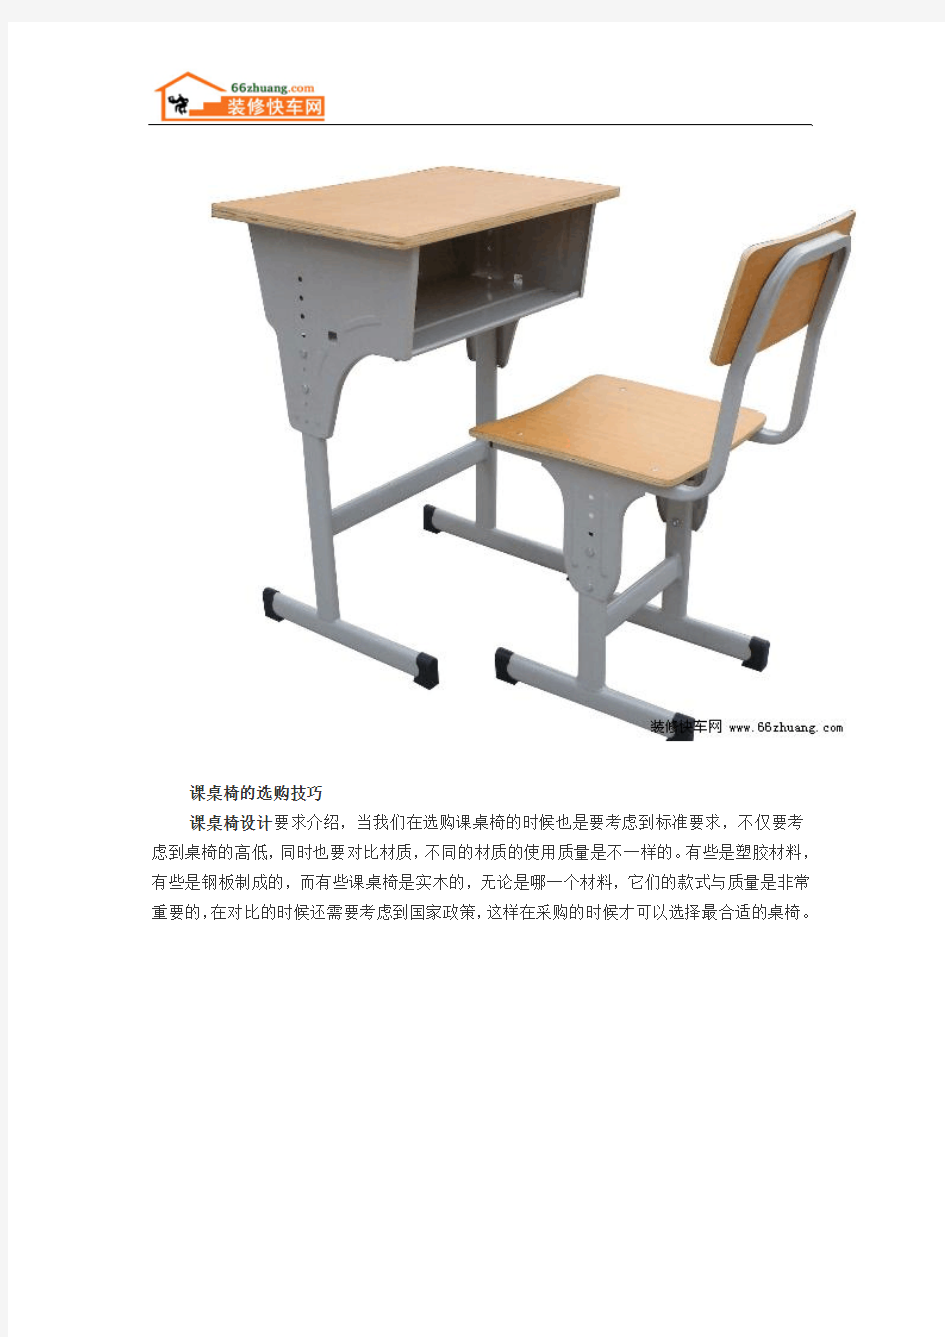 课桌椅哪种类型的比较好用 有哪些规格呢